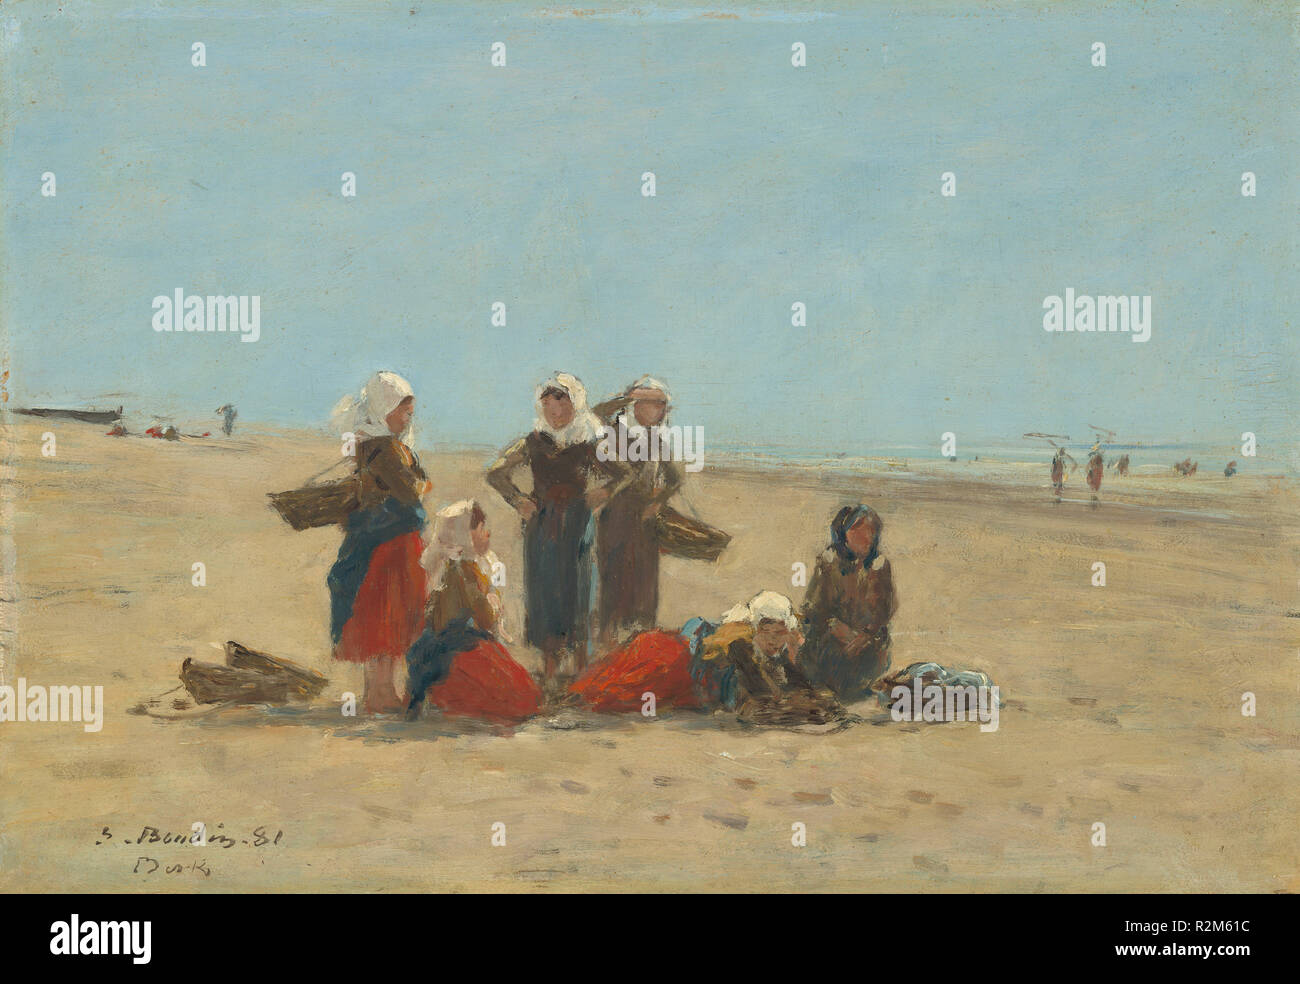 Les femmes sur la plage de Berck. En date du : 1881. Dimensions : hors tout : 24,8 x 36,2 cm (9 3/4 x 14 1/4 in.) : 41,6 x 52,4 encadré x 5,2 cm (16 3/8 x 20 5/8 x 2 1/16 in.). Médium : Huile sur bois. Musée : National Gallery of Art, Washington DC. Auteur : Eugène Boudin. Banque D'Images